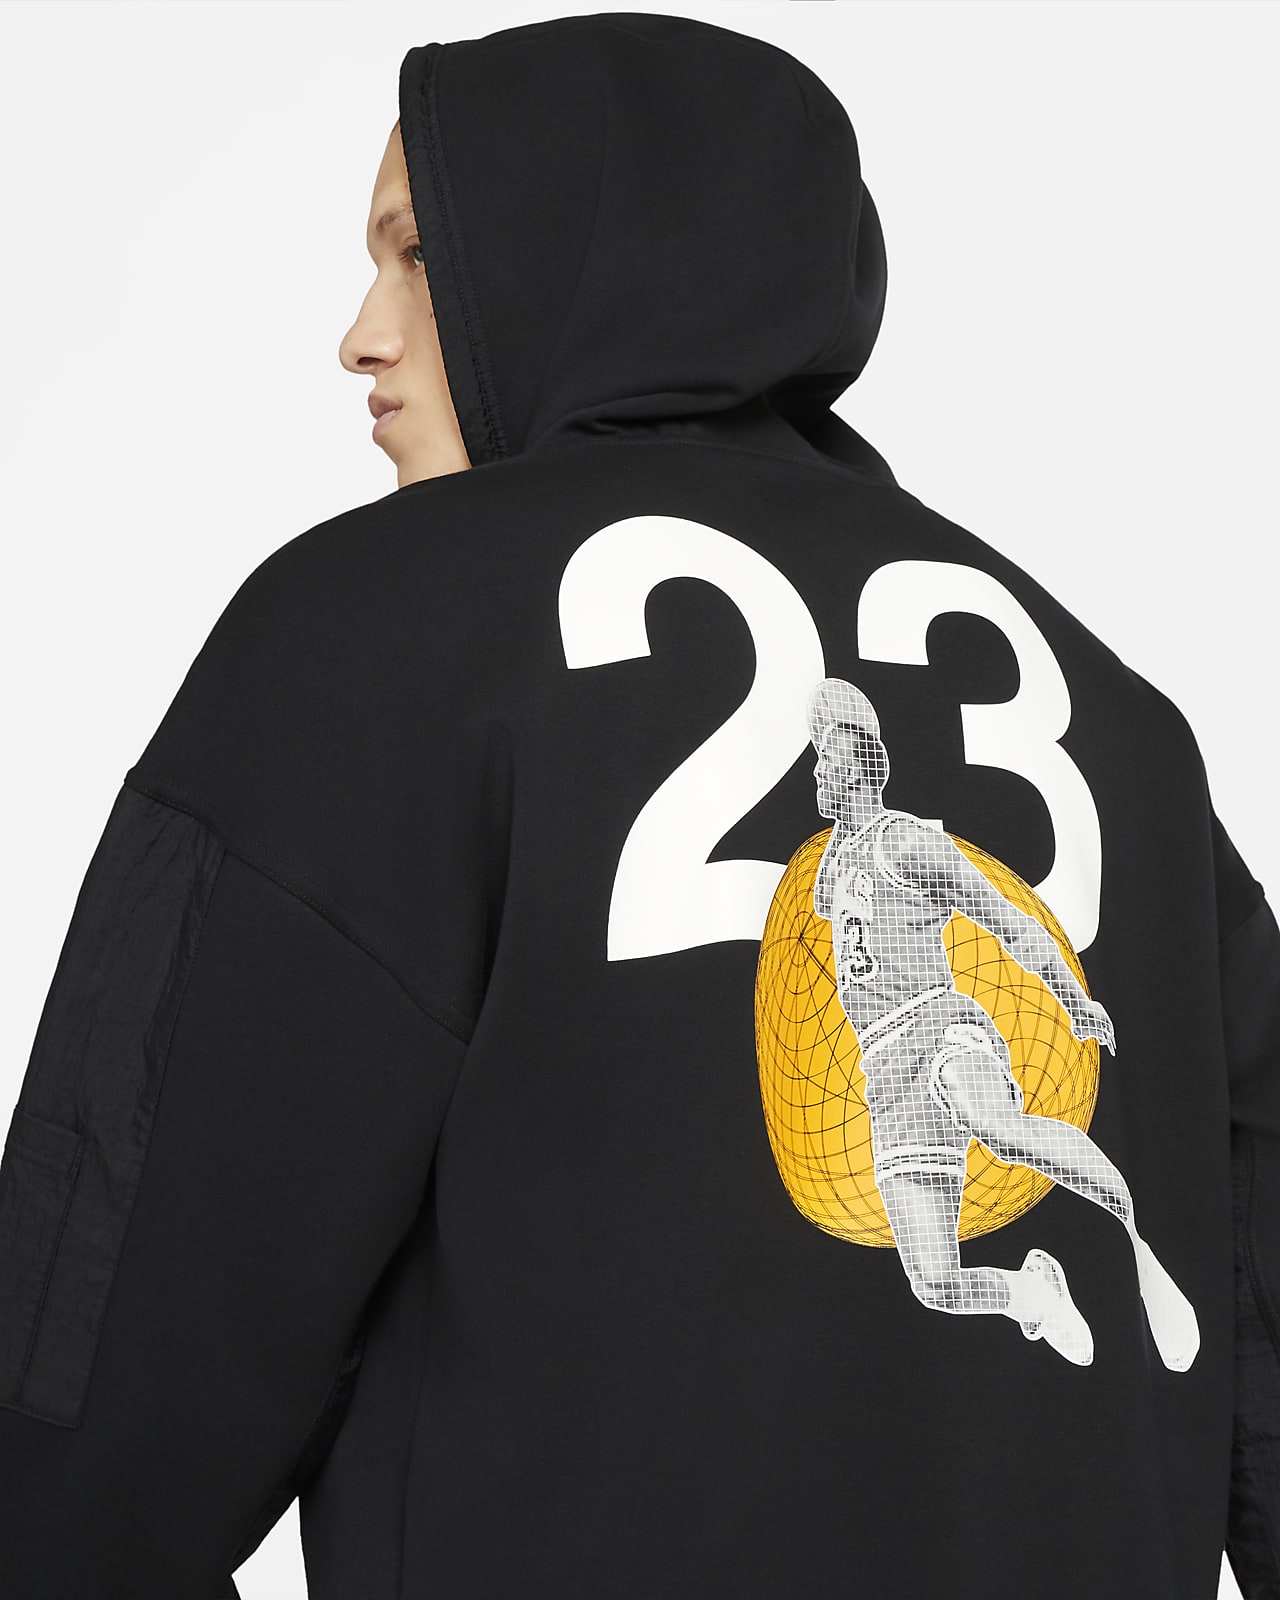 jordan 23 engineered pullover hoodie